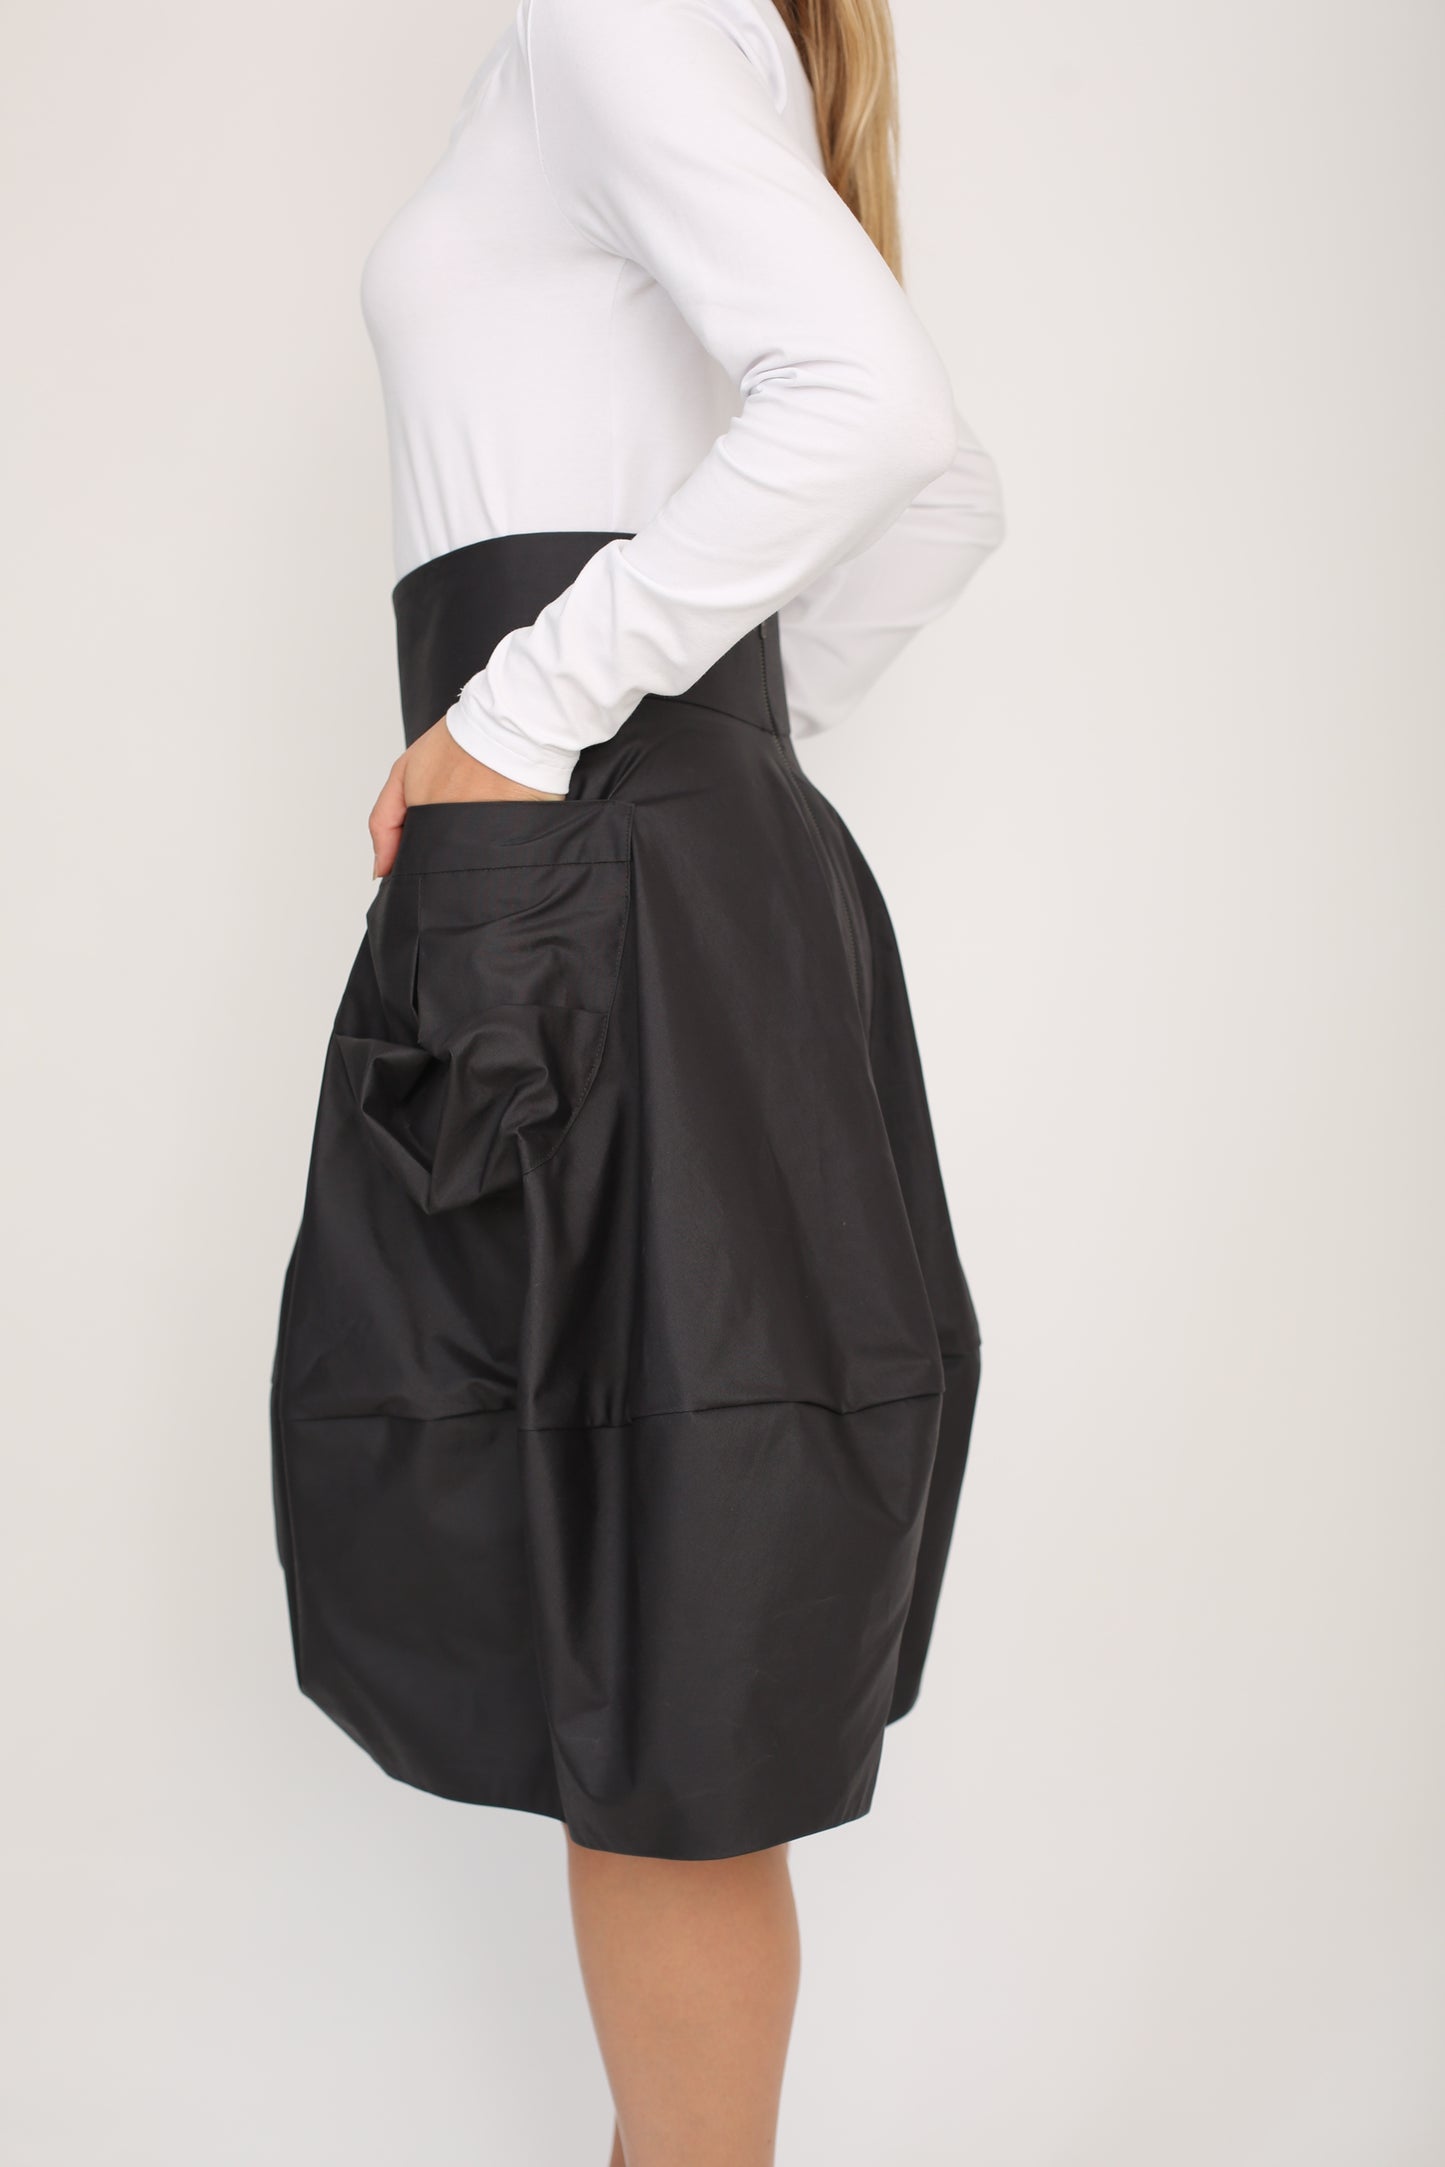 Rain proof skirt ,Bubble skirt ,Waterproof skirt ,Skirt with pockets ,Boho style skirt